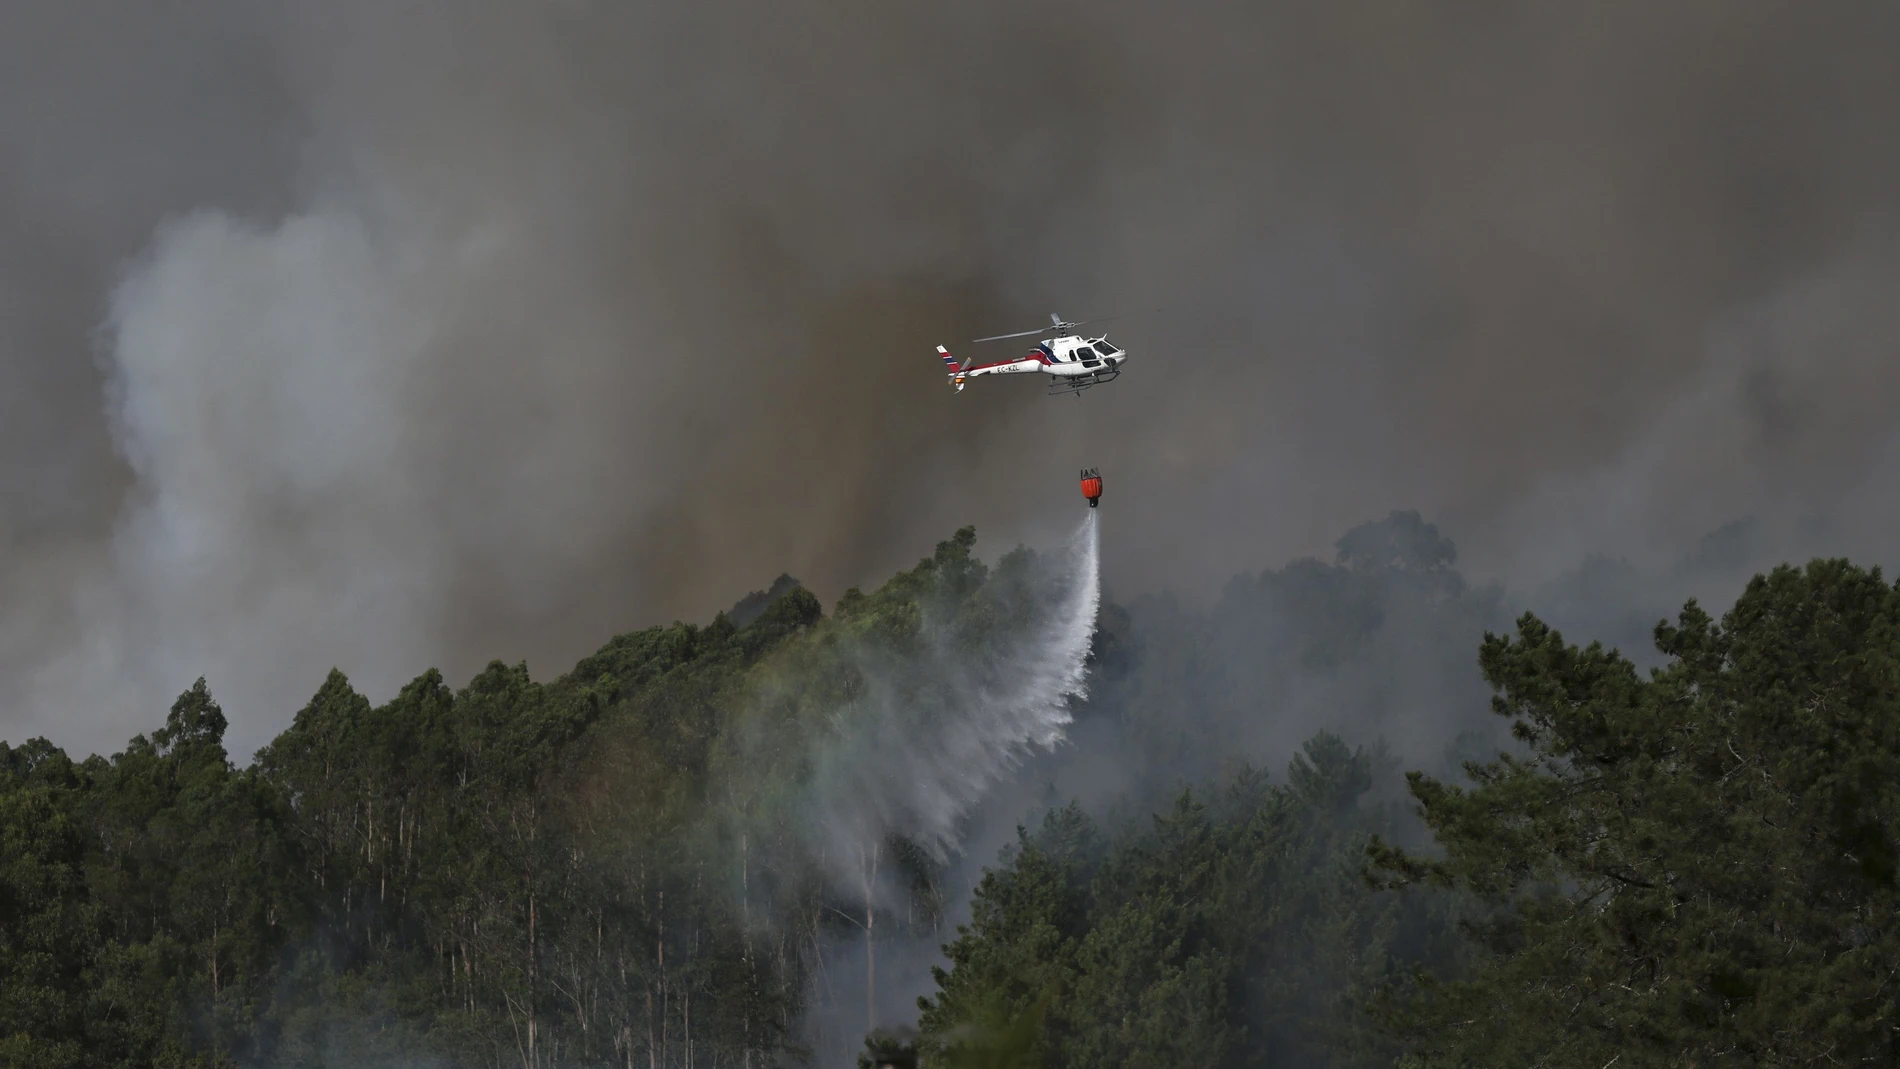  Un helicóptero trabaja en las labores de extinción del incendio originado esta tarde en la parroquia de Tenorio, en Cotobade (Pontevedra)